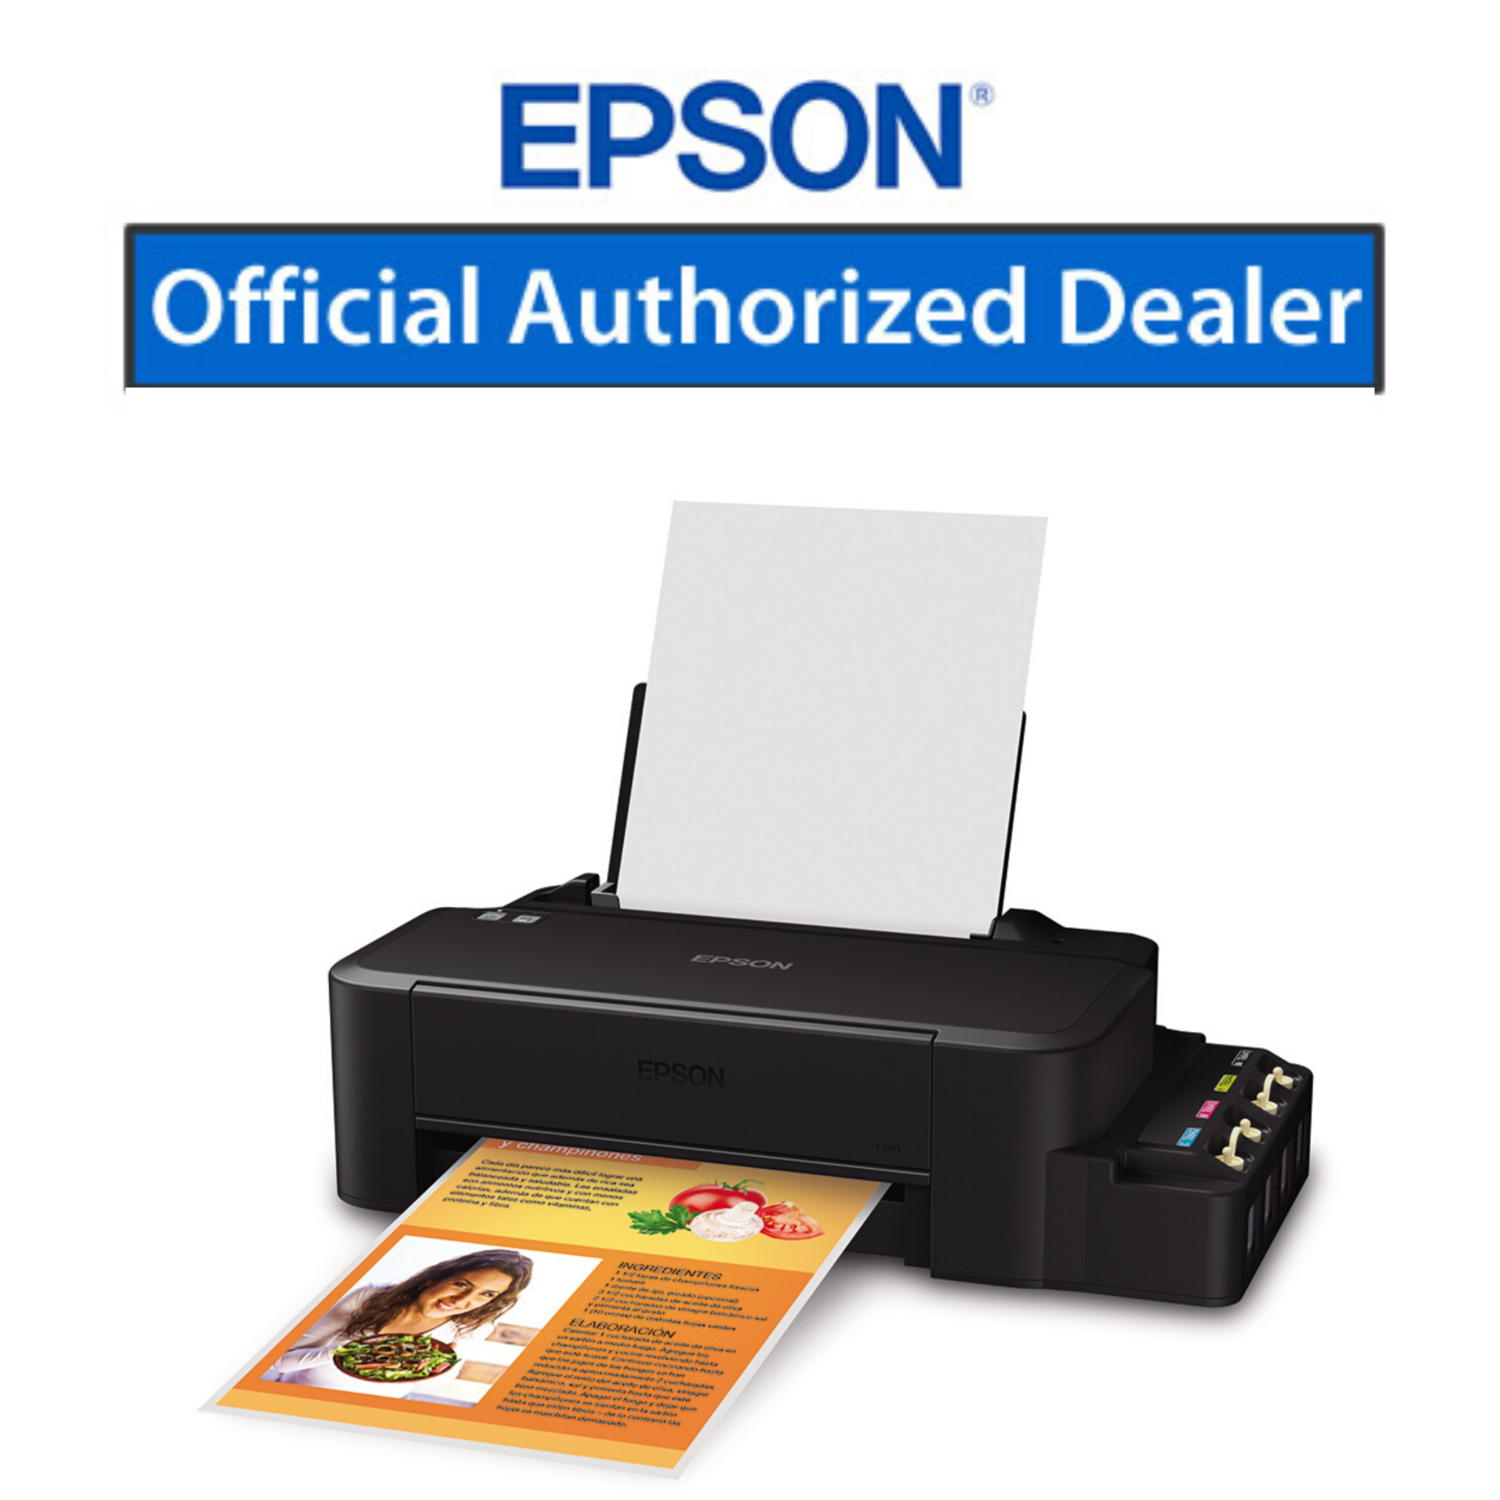 Недорогие принтеры для печати. Принтер Эпсон l120. Принтер Epson l121. Принтер Эпсон л 120. Принтер Epson ECOTANK l121.